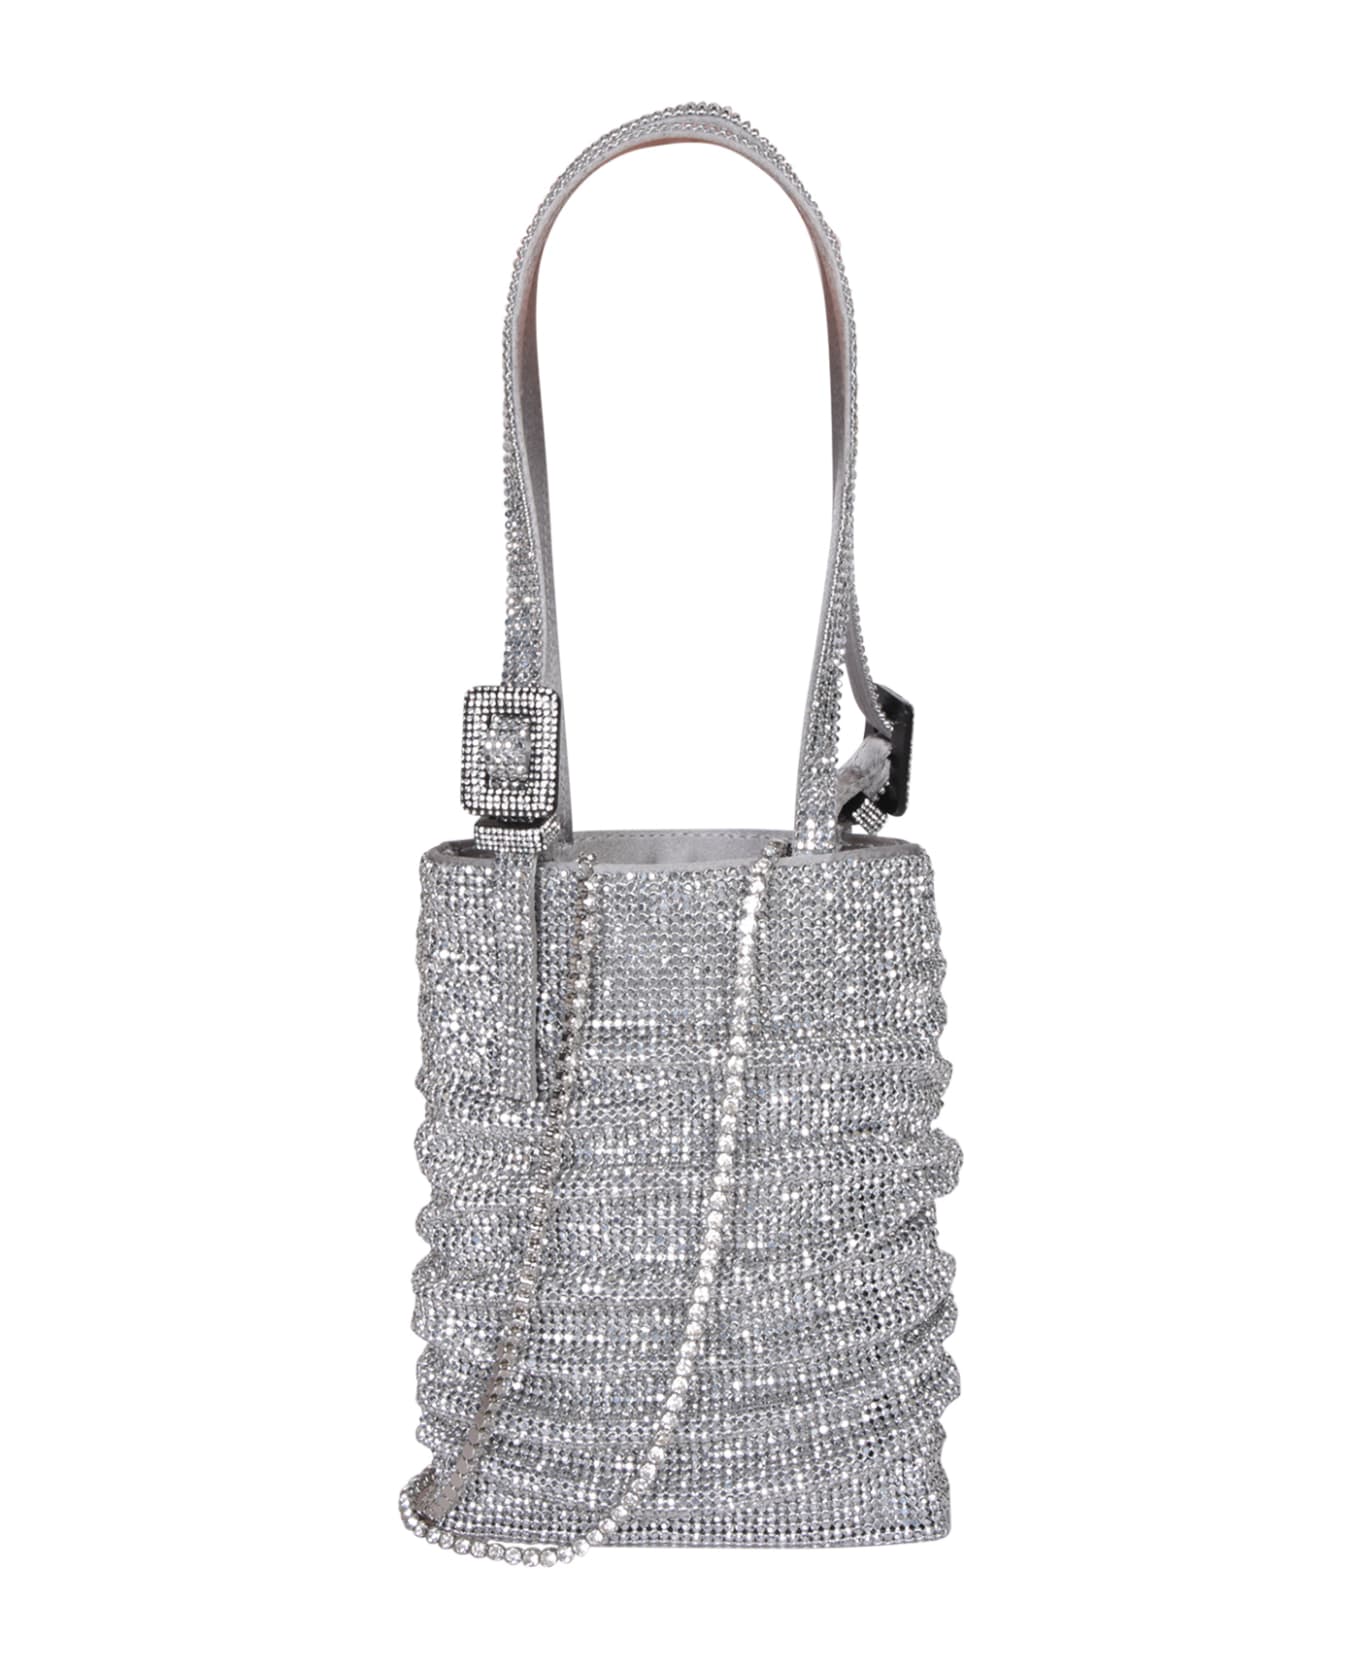 Benedetta Bruzziches Lollo La Petite Silver Bag - Metallic